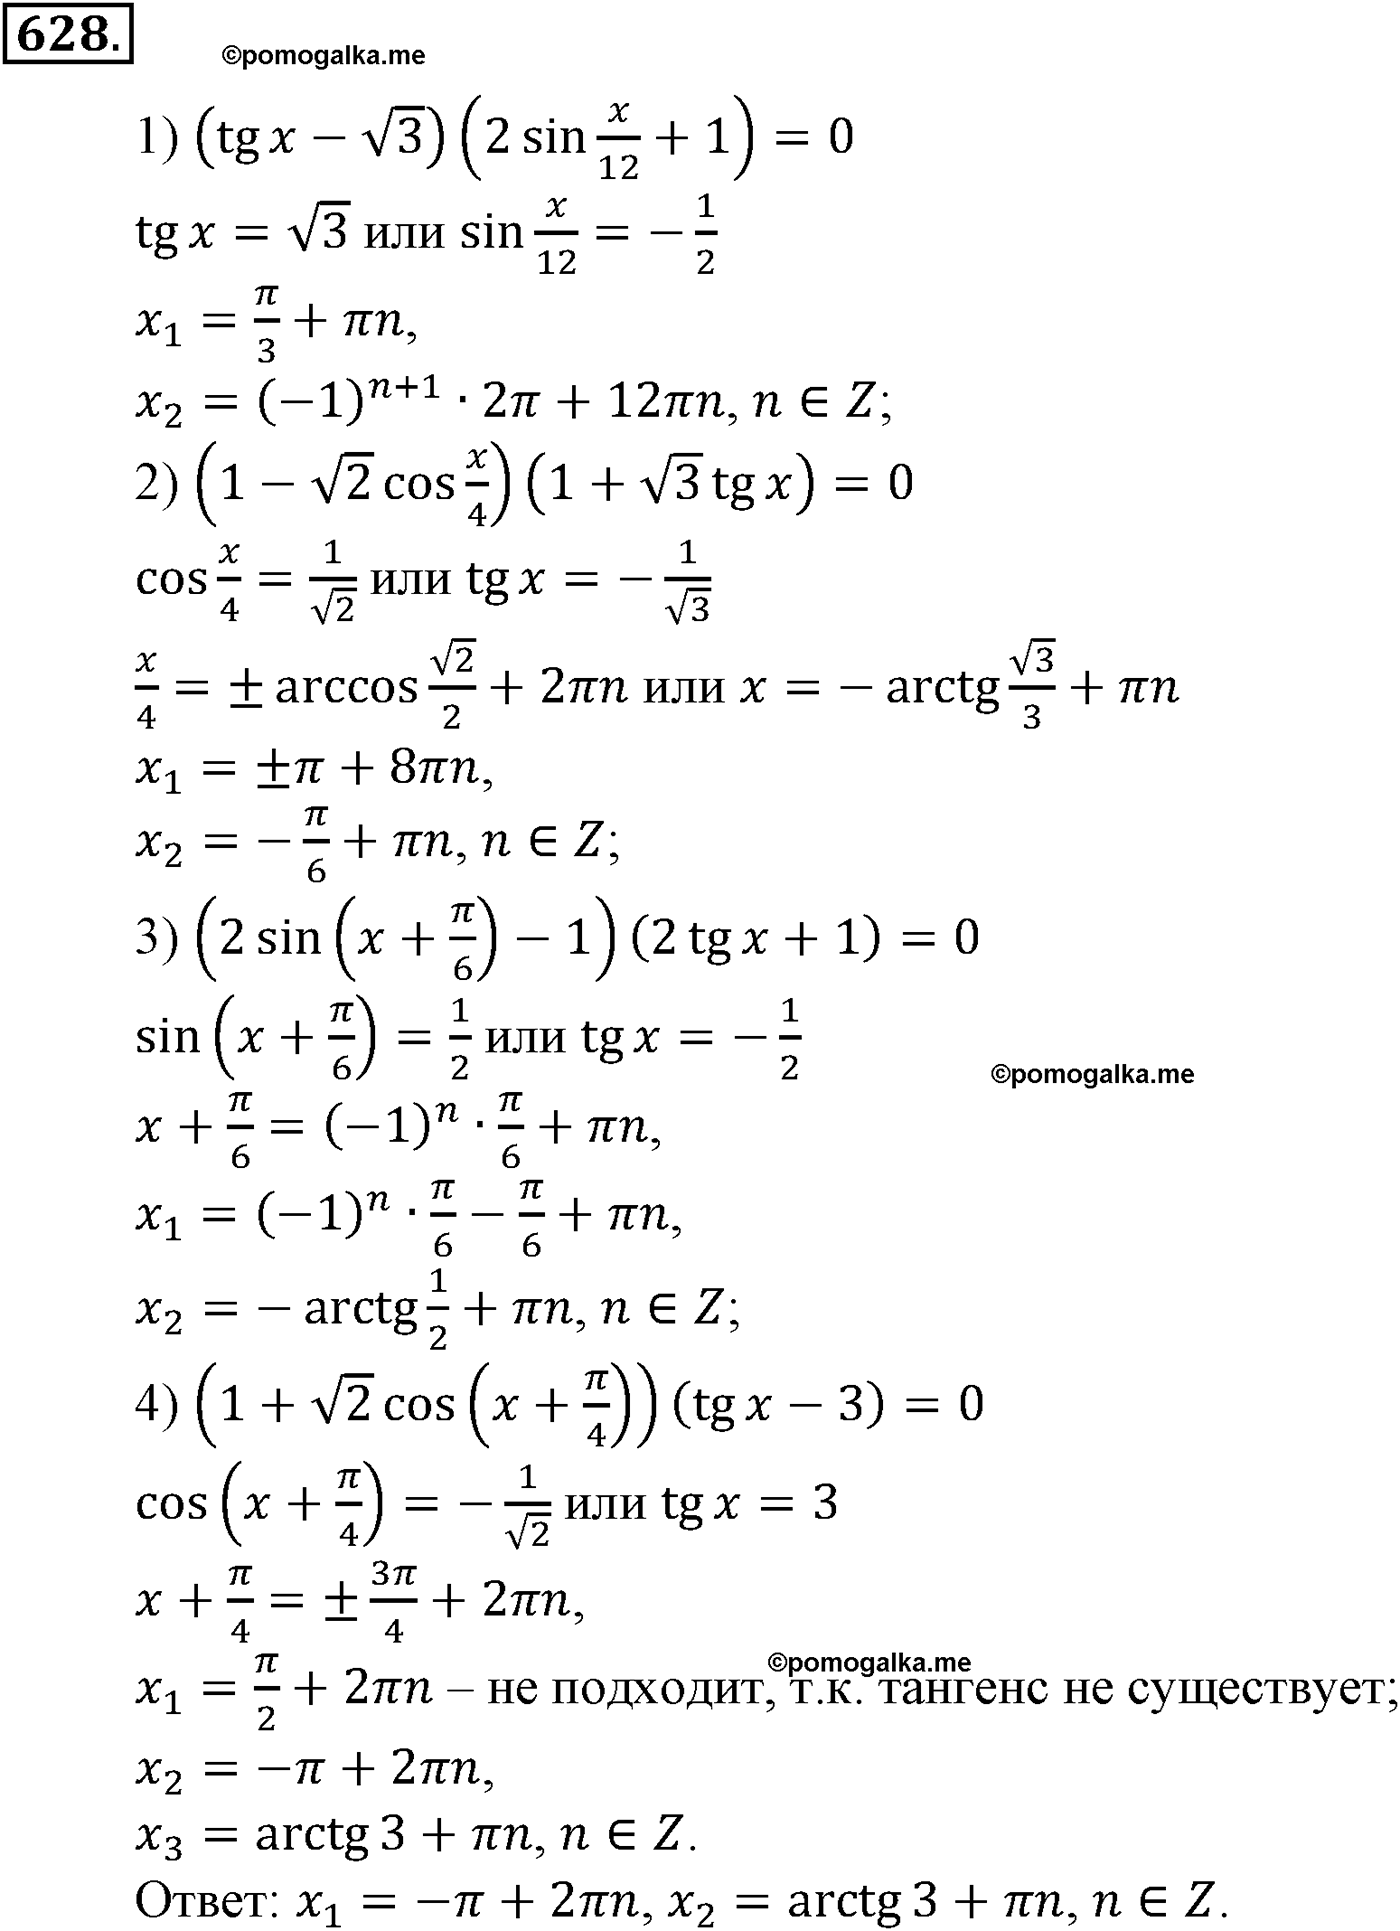 разбор задачи №628 по алгебре за 10-11 класс из учебника Алимова, Колягина